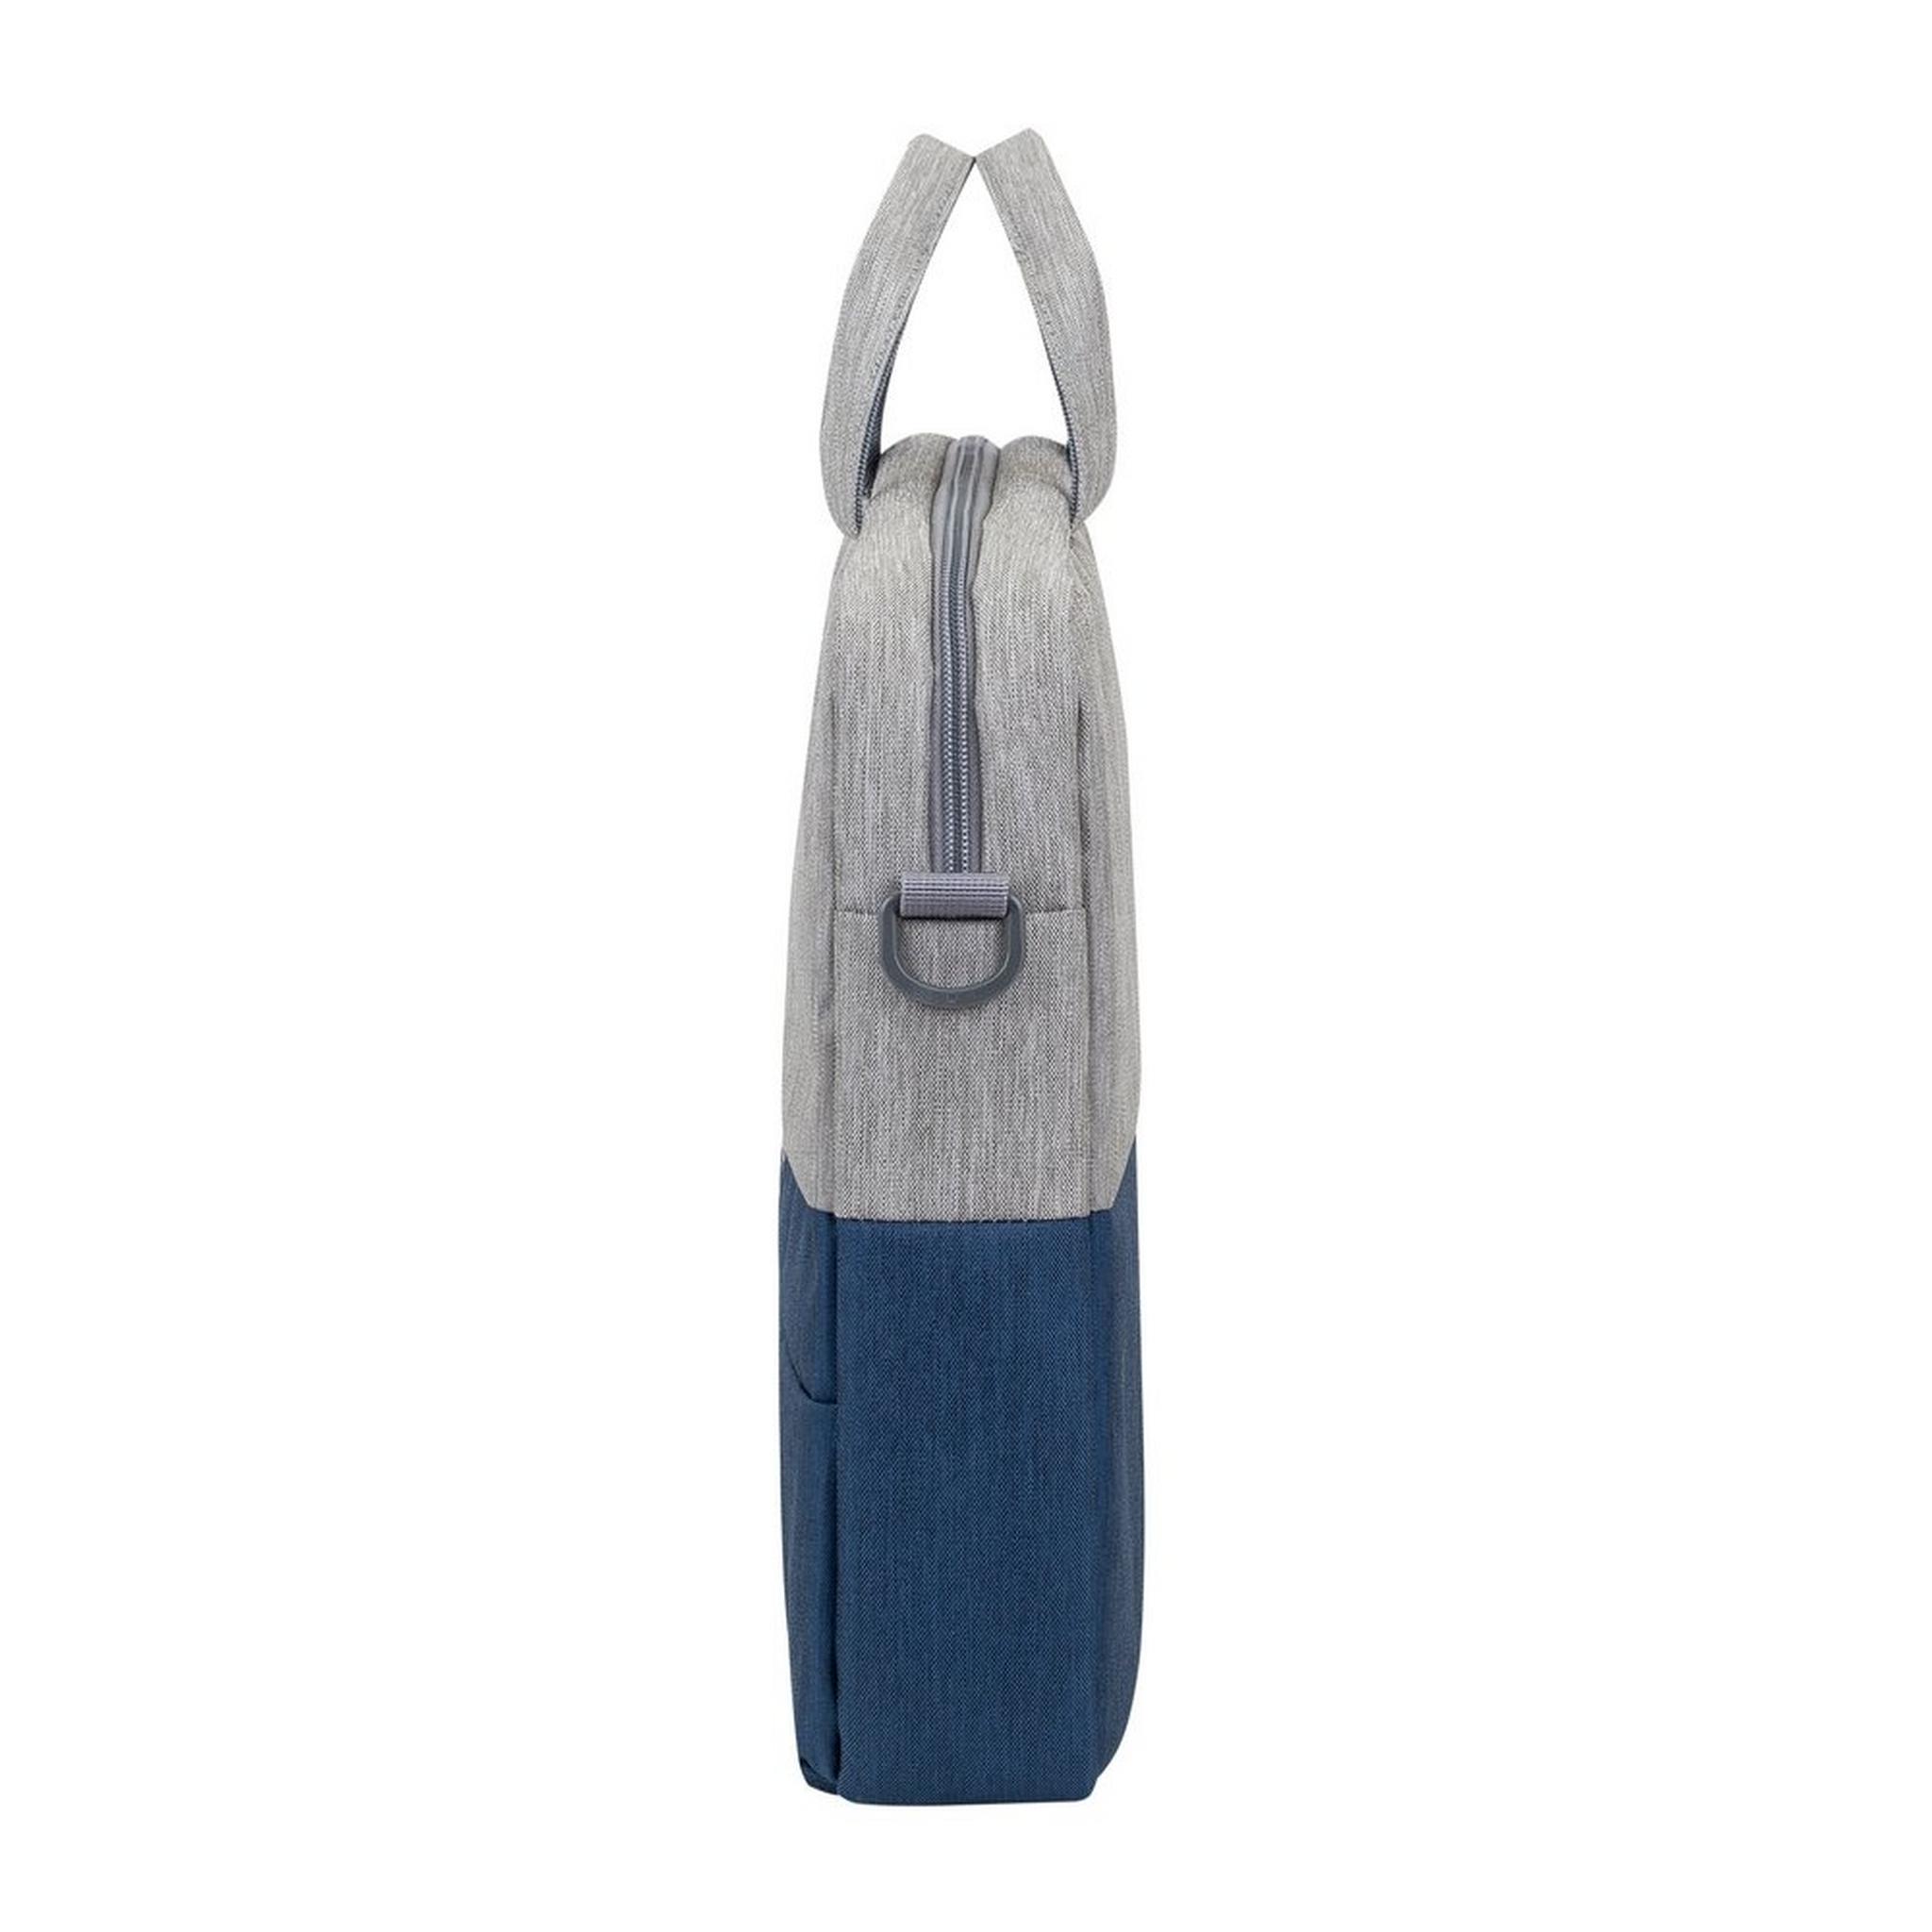 حقيبة اللابتوب بحجم 15.6 بوصة من ريفا - رمادي/أزرق داكن (7932)